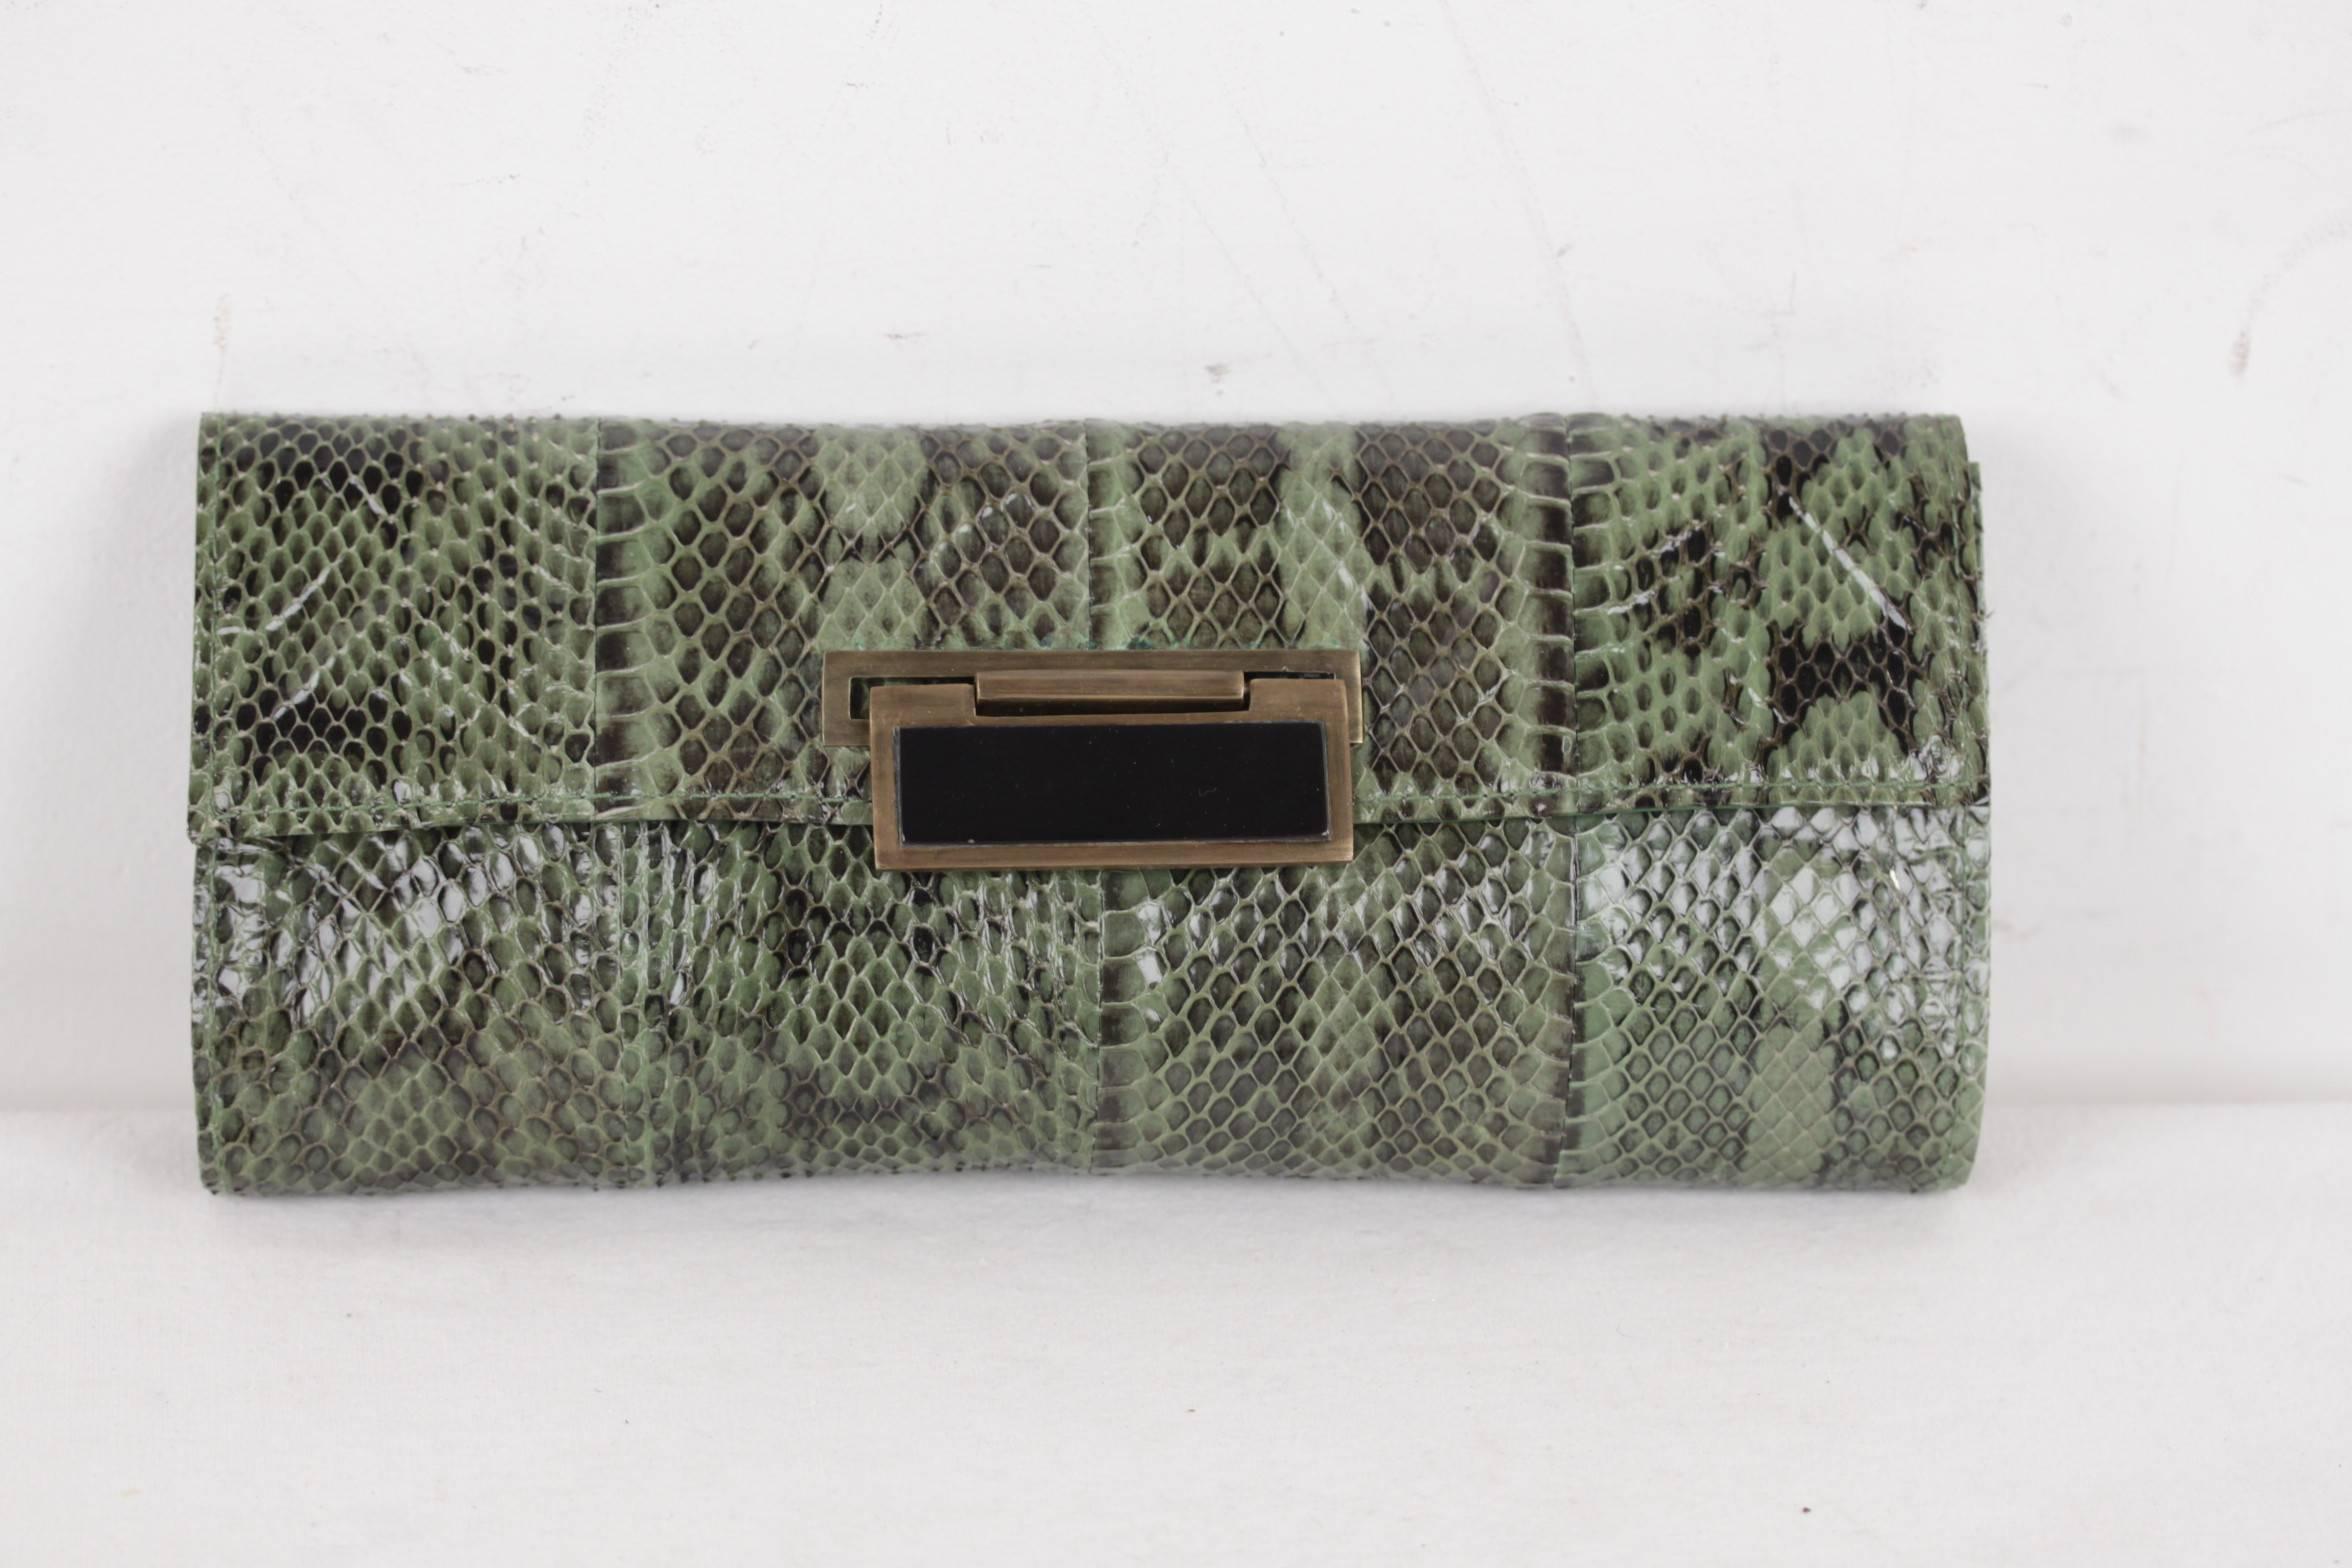 R Y Augousti Green Python Snakeskin Leather Clutch Handbag Purse Pouch Bag 3